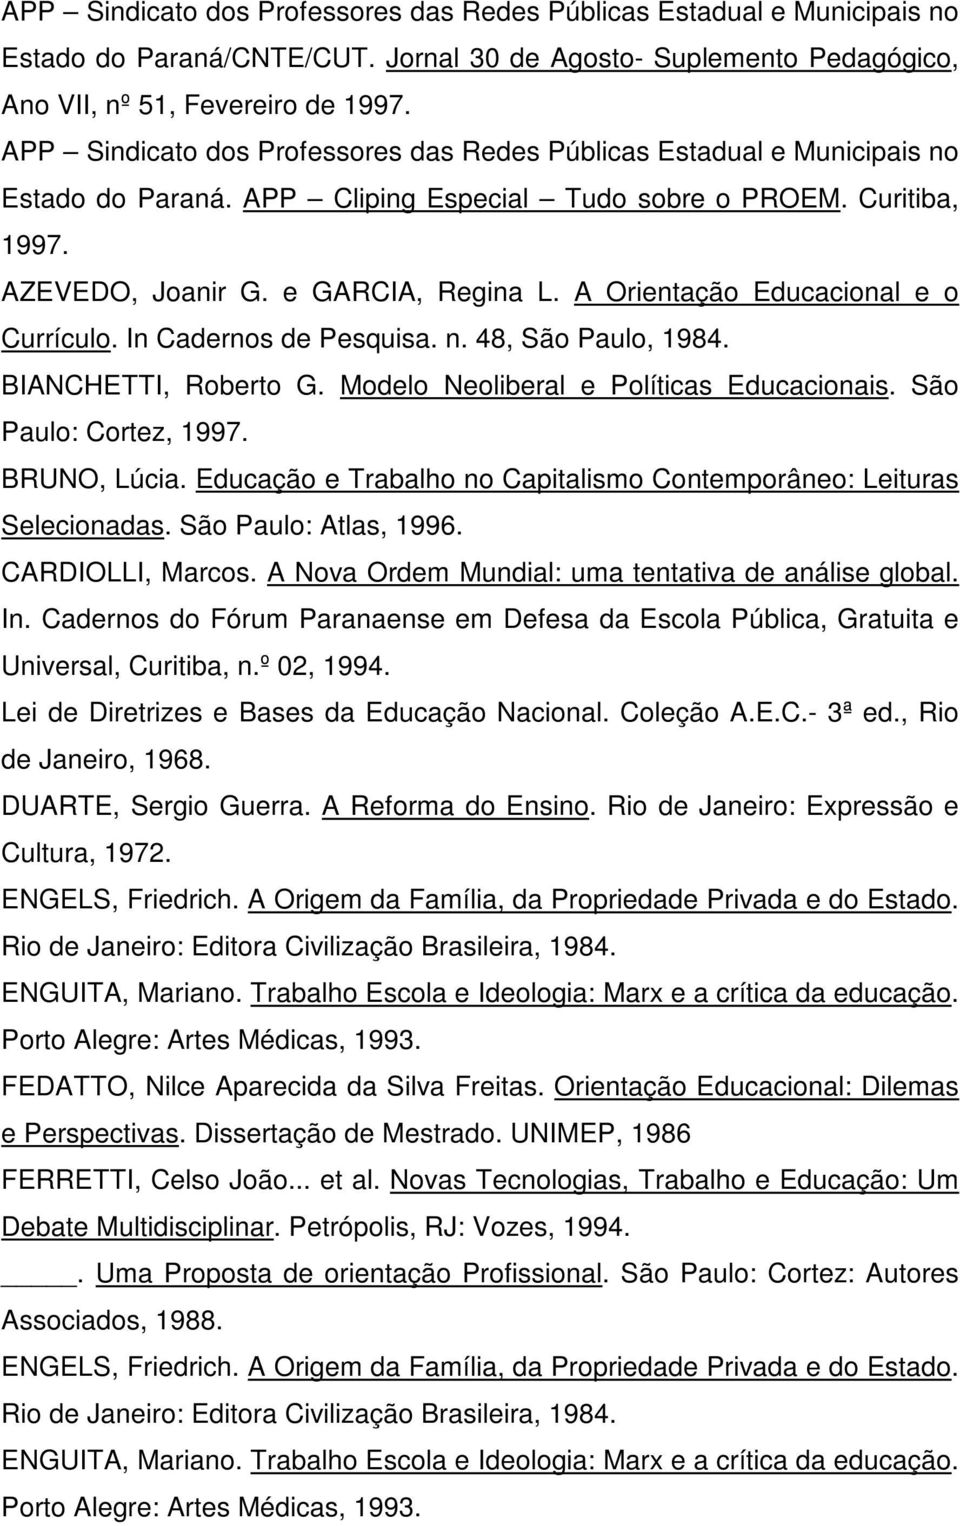 A Orientação Educacional e o Currículo. In Cadernos de Pesquisa. n. 48, São Paulo, 1984. BIANCHETTI, Roberto G. Modelo Neoliberal e Políticas Educacionais. São Paulo: Cortez, 1997. BRUNO, Lúcia.